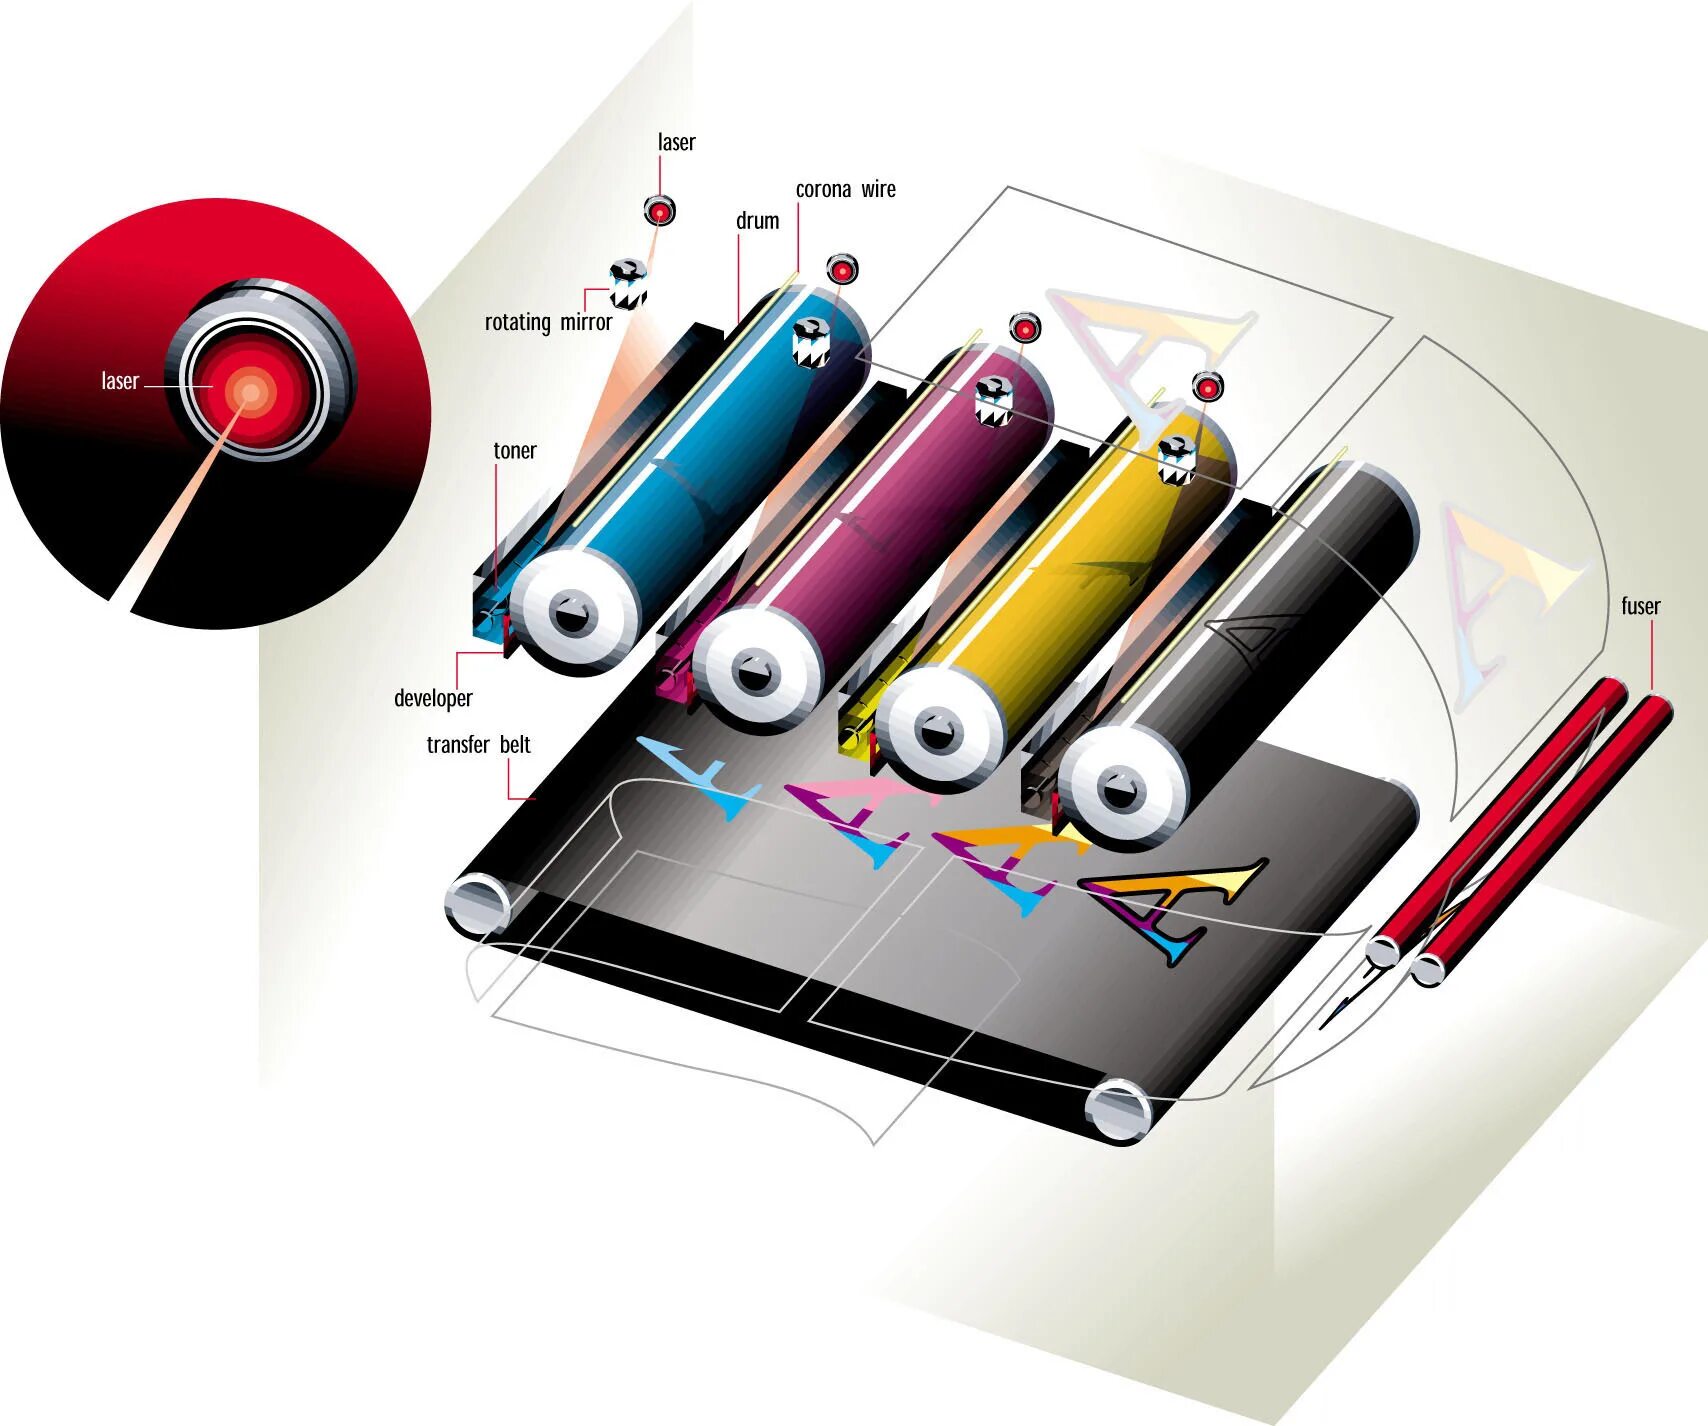 Лазерные принтеры технология печати. Принцип цветной печати лазерного принтера. Принцип работы цветного лазерного принтера. Sharp MX-238gt.